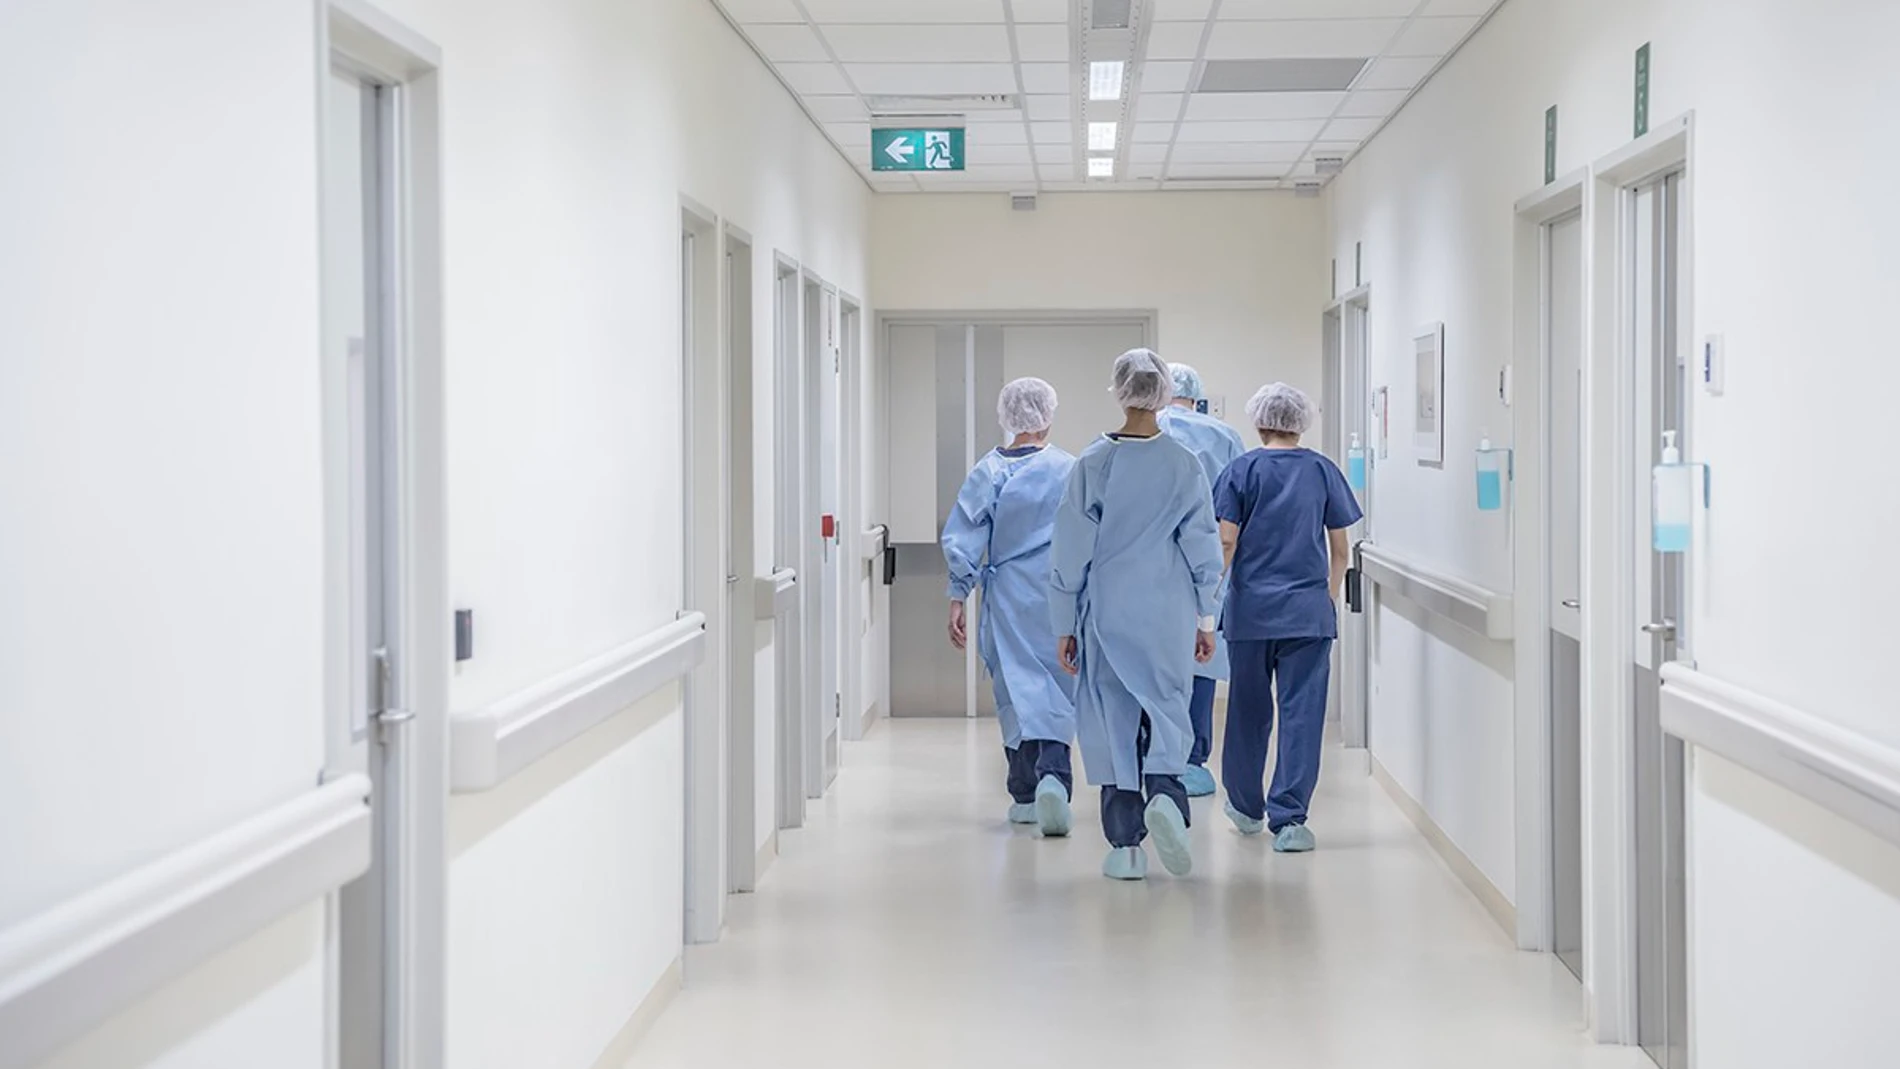 Médicos caminando en un hospital (Archivo)